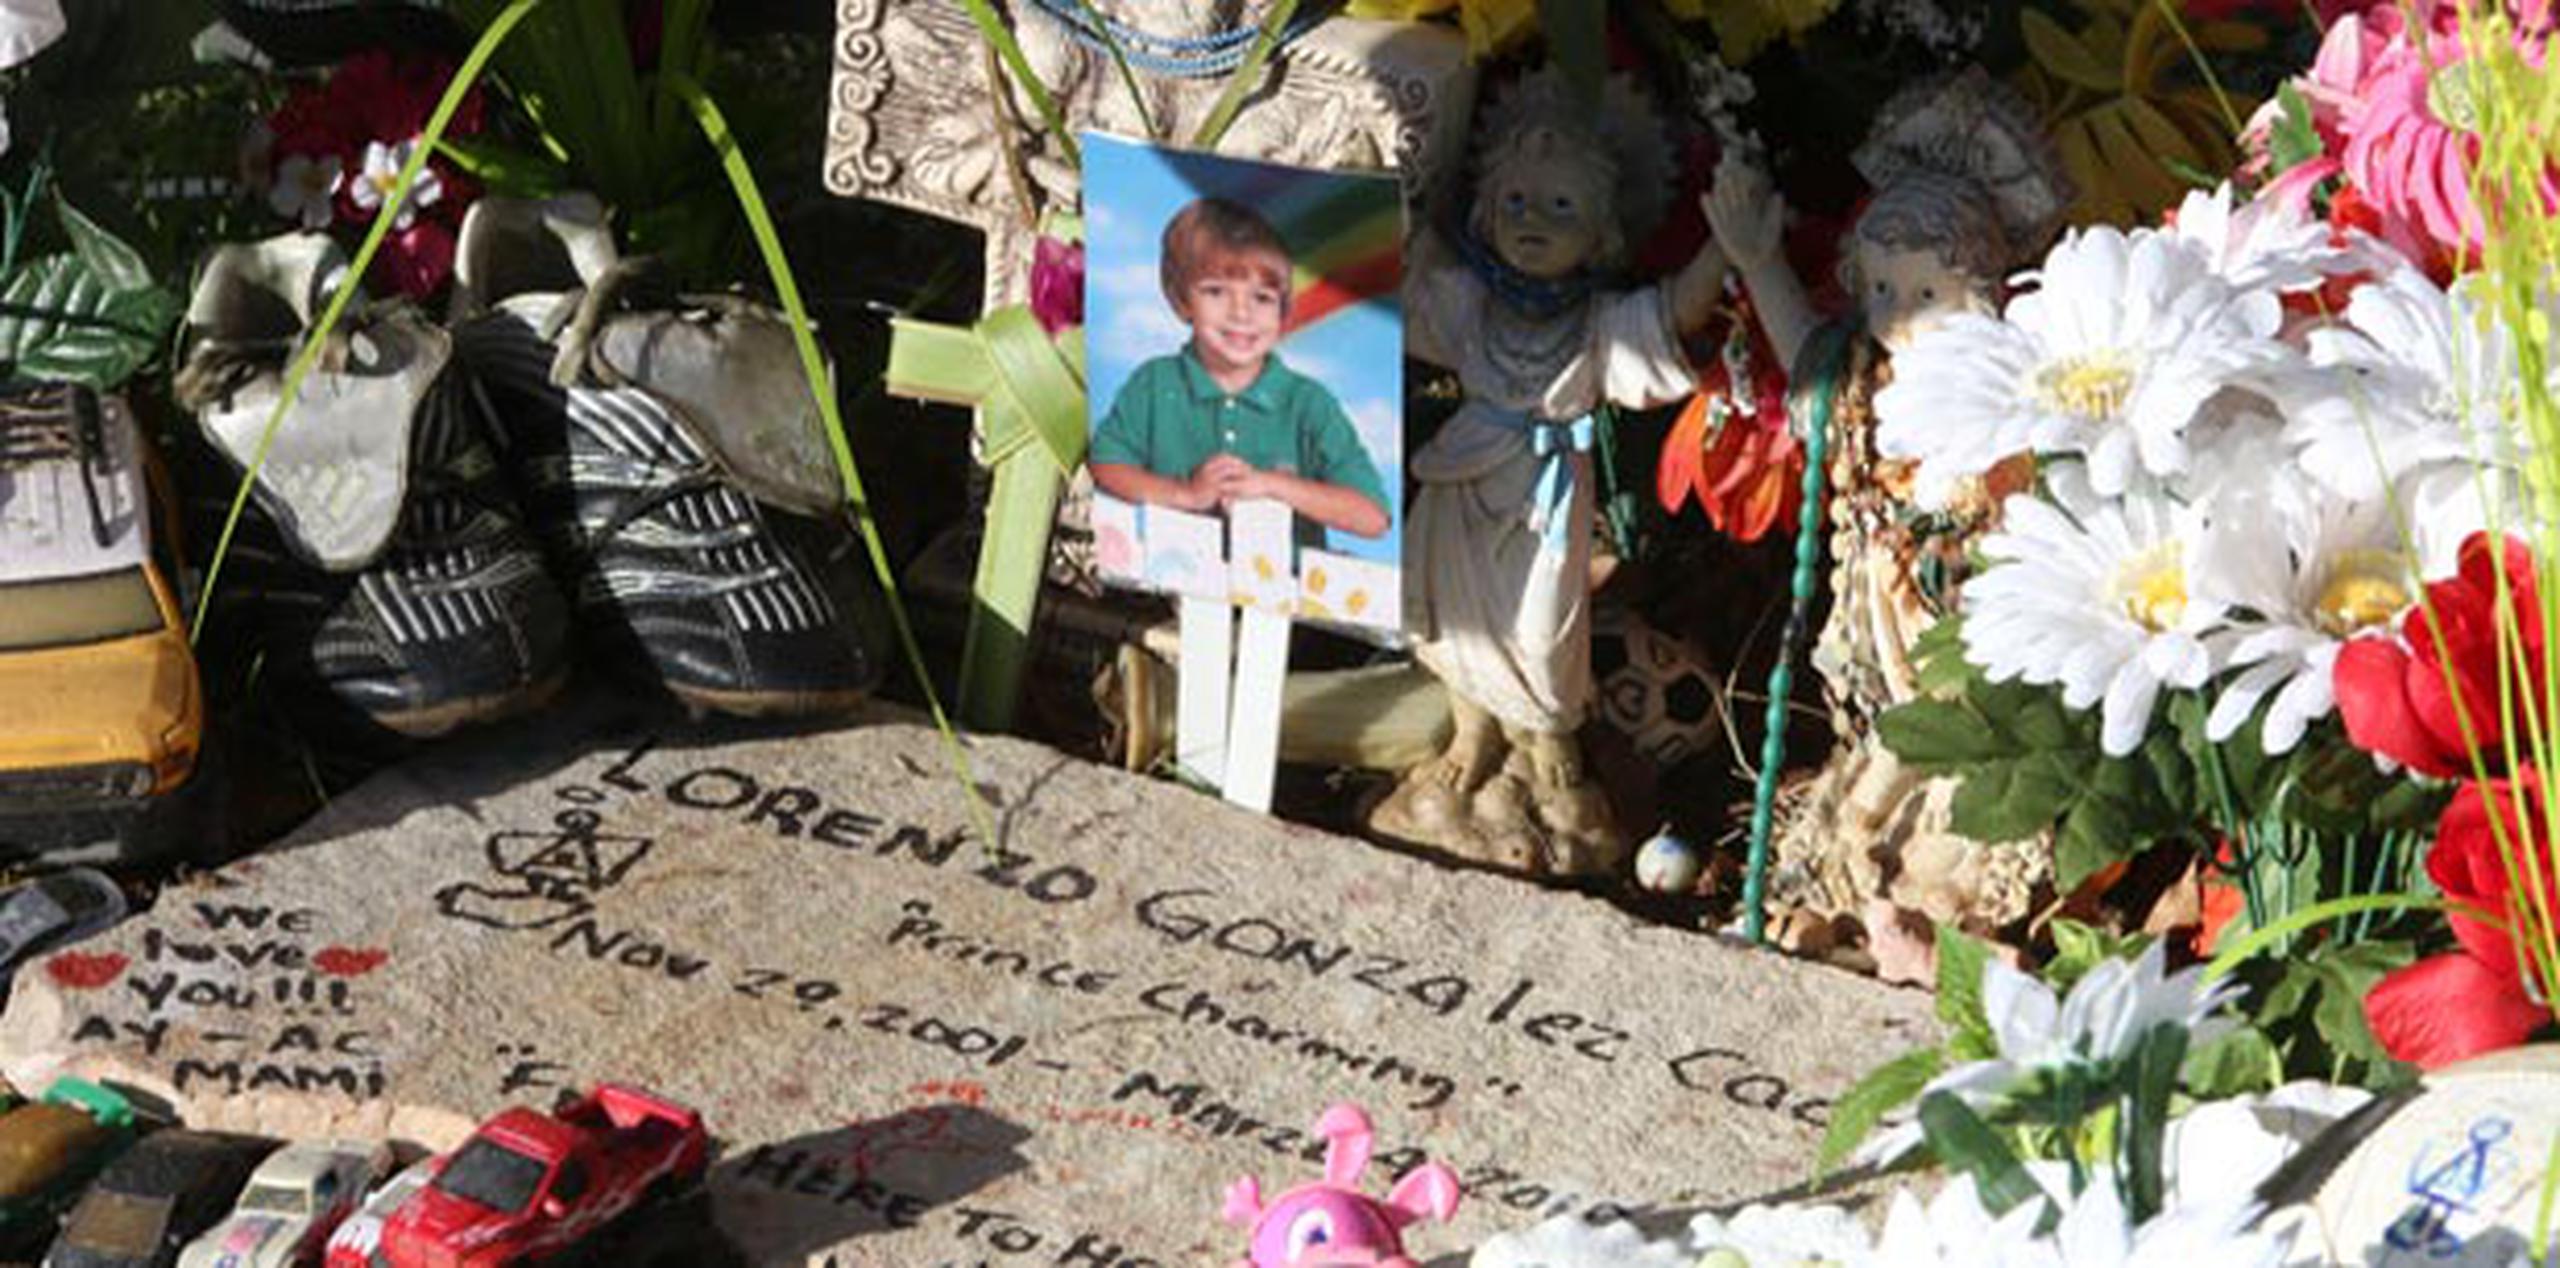 El lugar se encuentra adornado con varios recordatorios de personas que, cercanas o no, se han sentido identificadas con el caso del niño asesinado. (angel.rivera@gfrmedia.com)